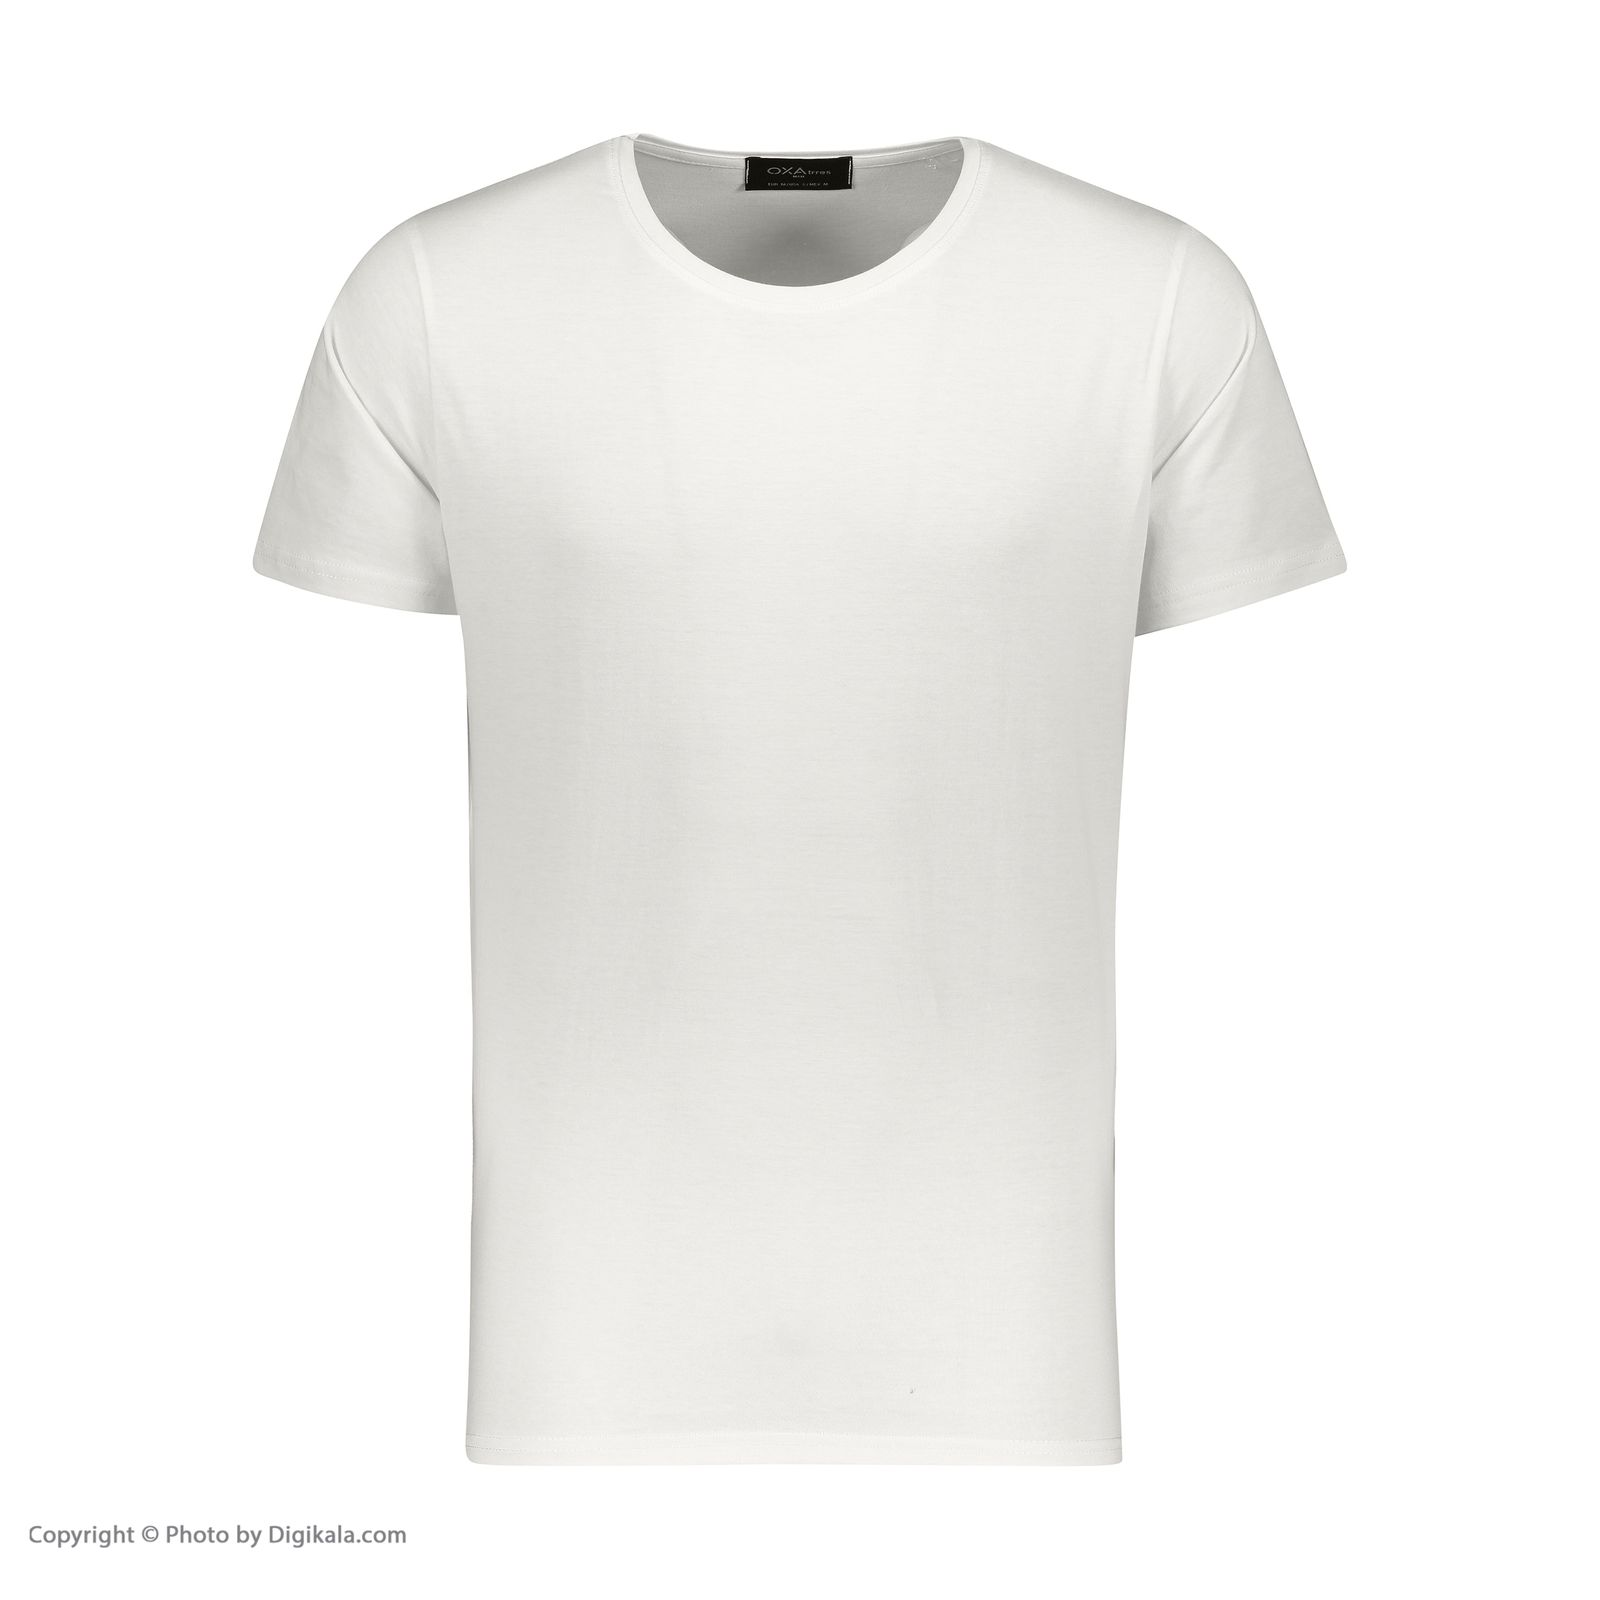 تی شرت آستین کوتاه مردانه اکزاترس مدل P032001001370100-001 -  - 2